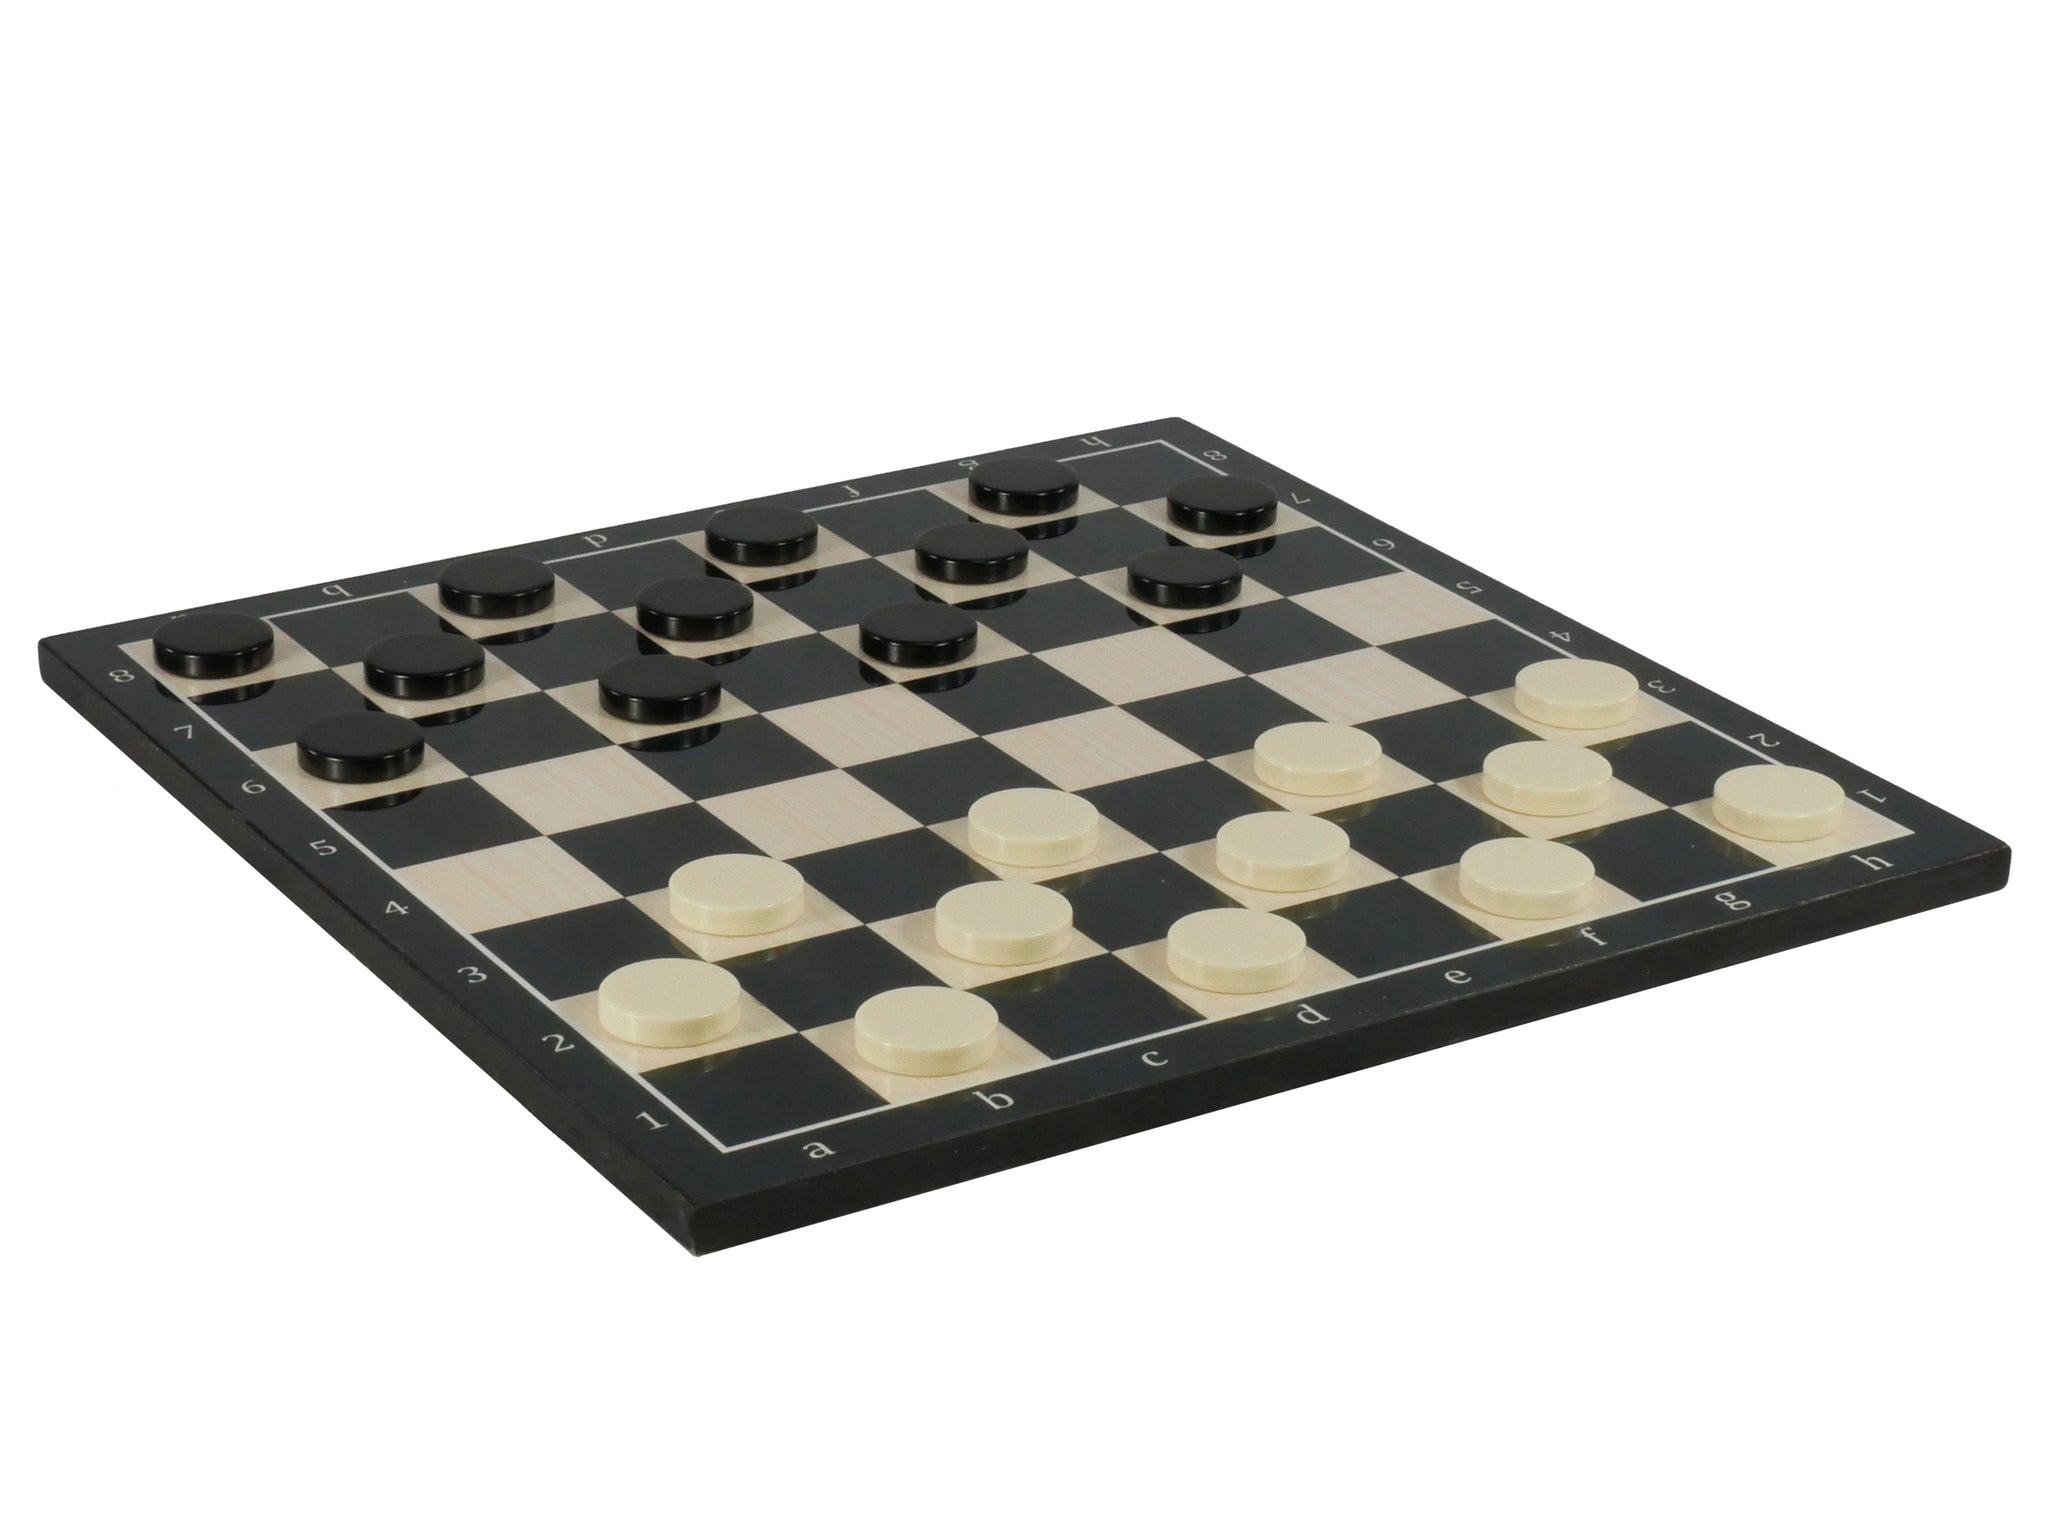 Checker Set - Black Checkers in Urea on Black Alpha Numeric Decoupage